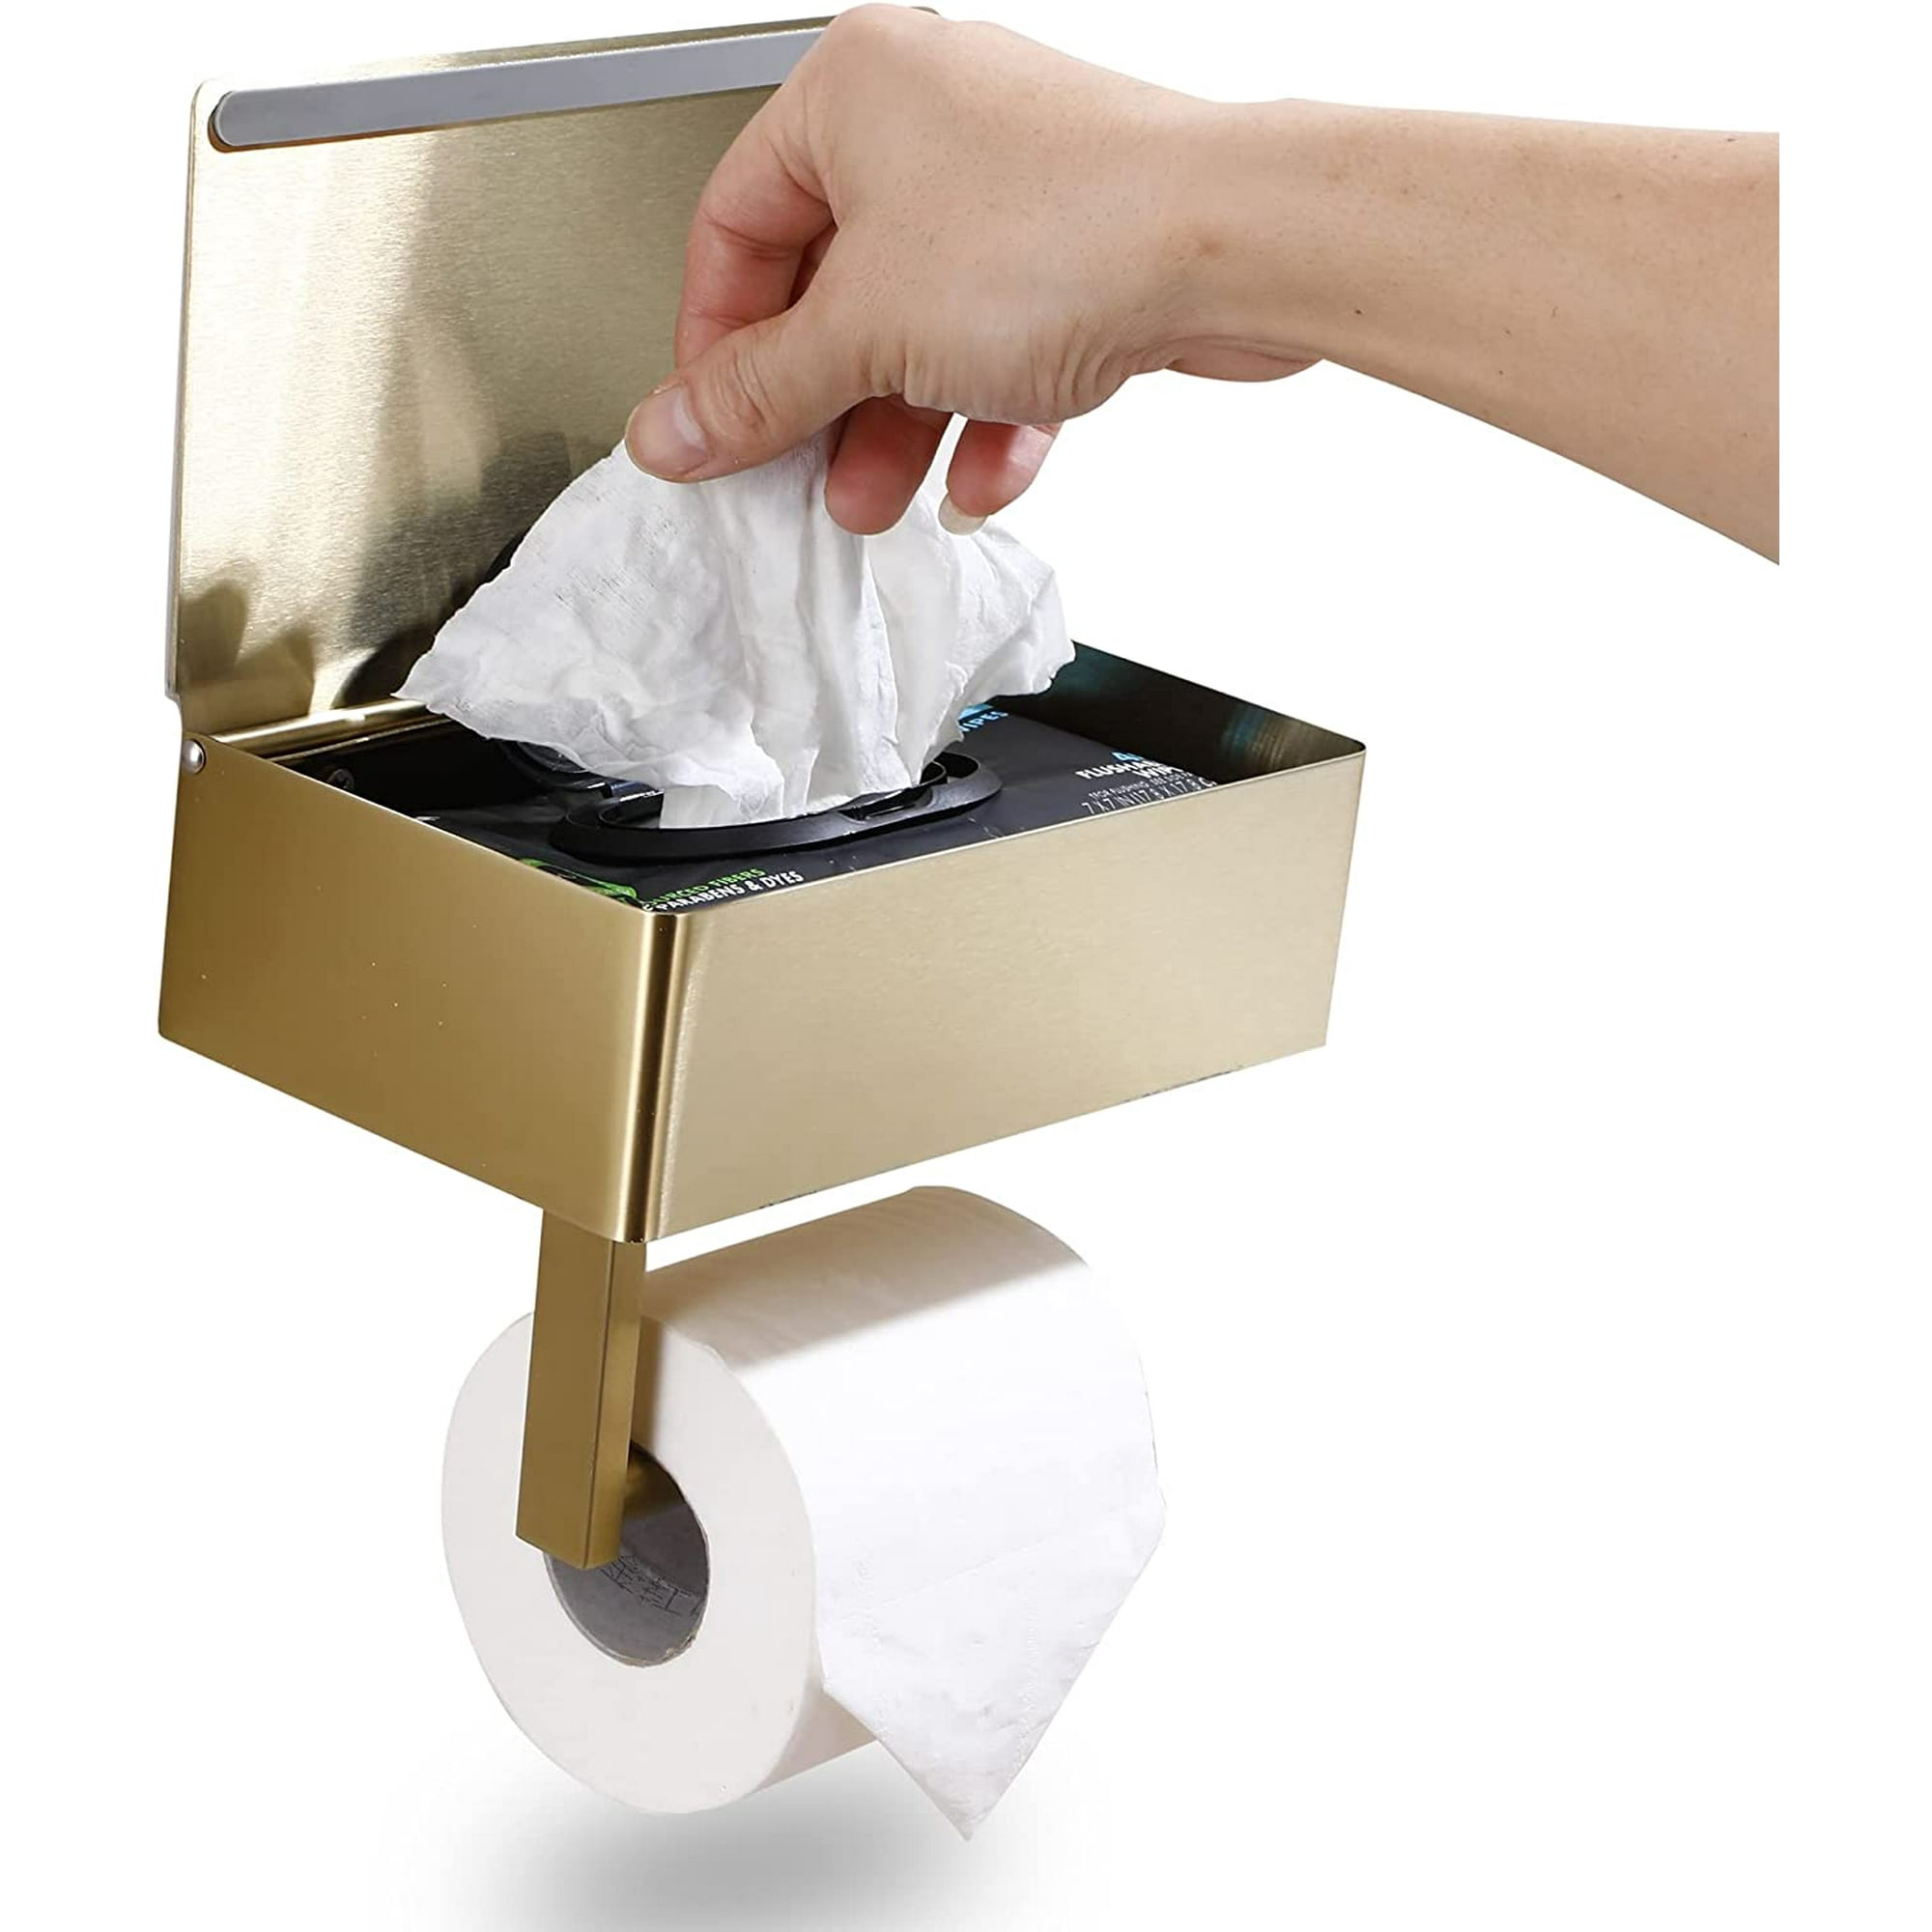 Portarrollo de papel higiénico con dispensador de toallitas húmedas  desechables, estante y almacenamiento para baño - Mantiene tus toallitas  ocultas